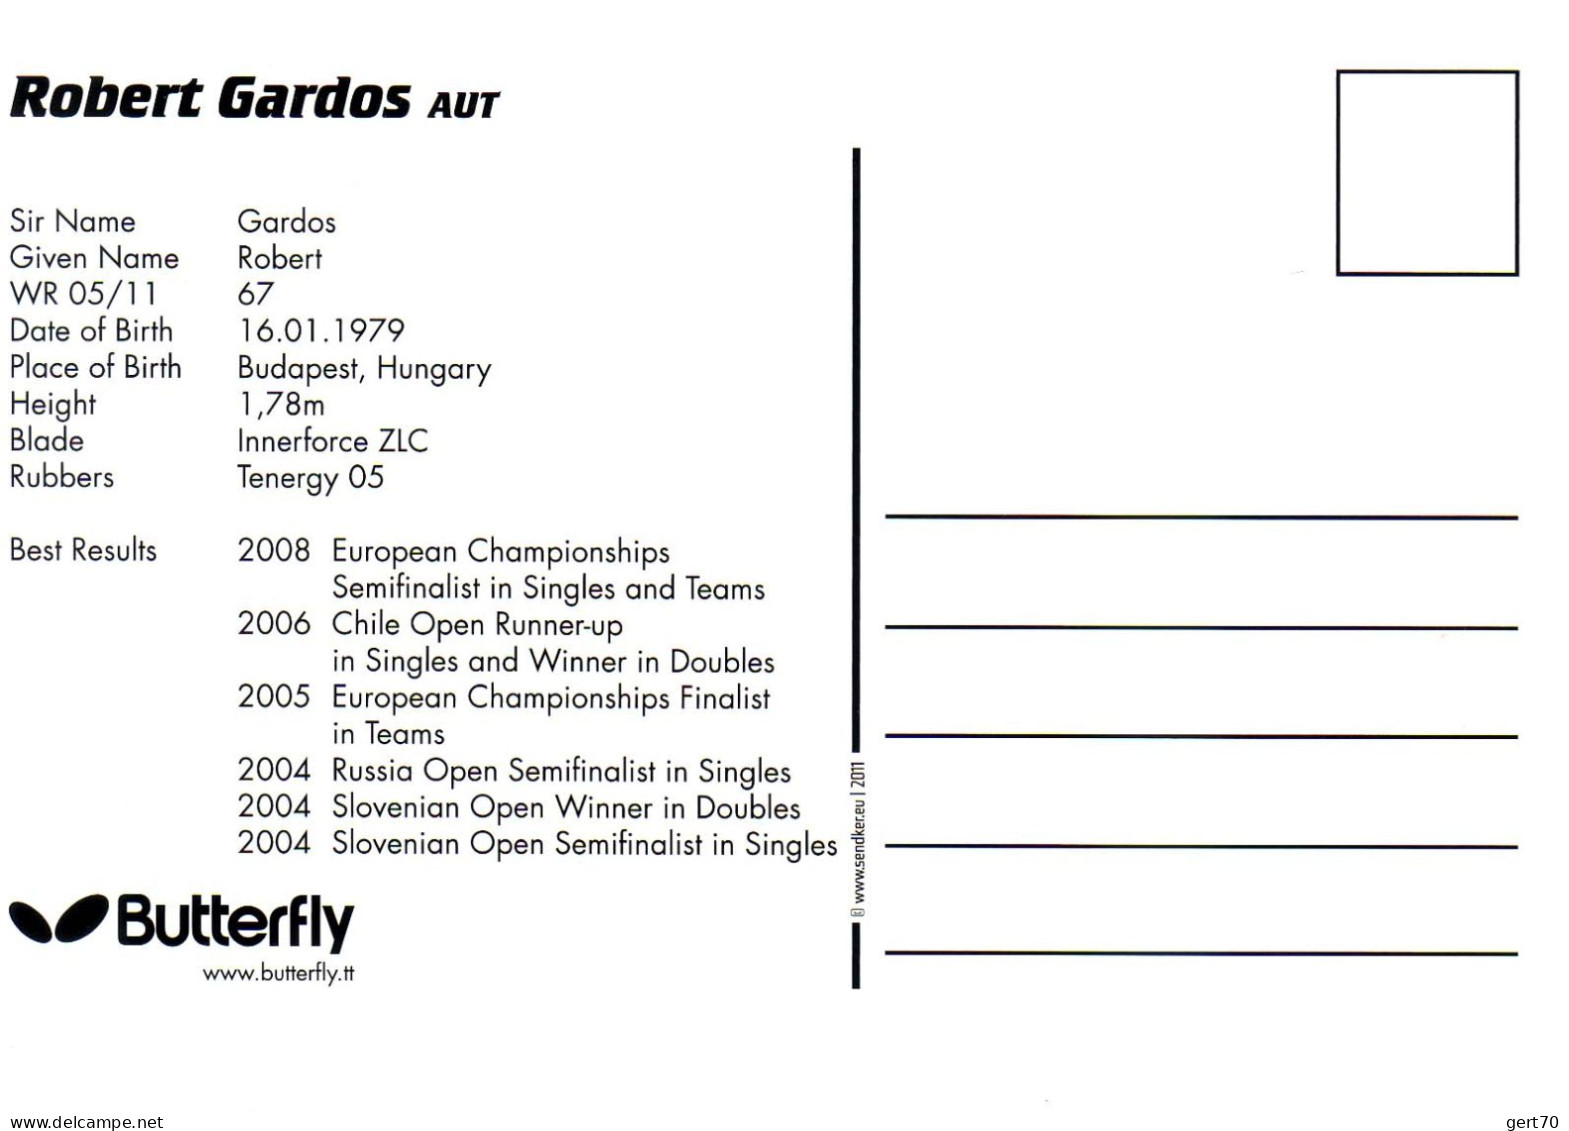 Austria / Autriche 2011, Robert Gardos - Tischtennis